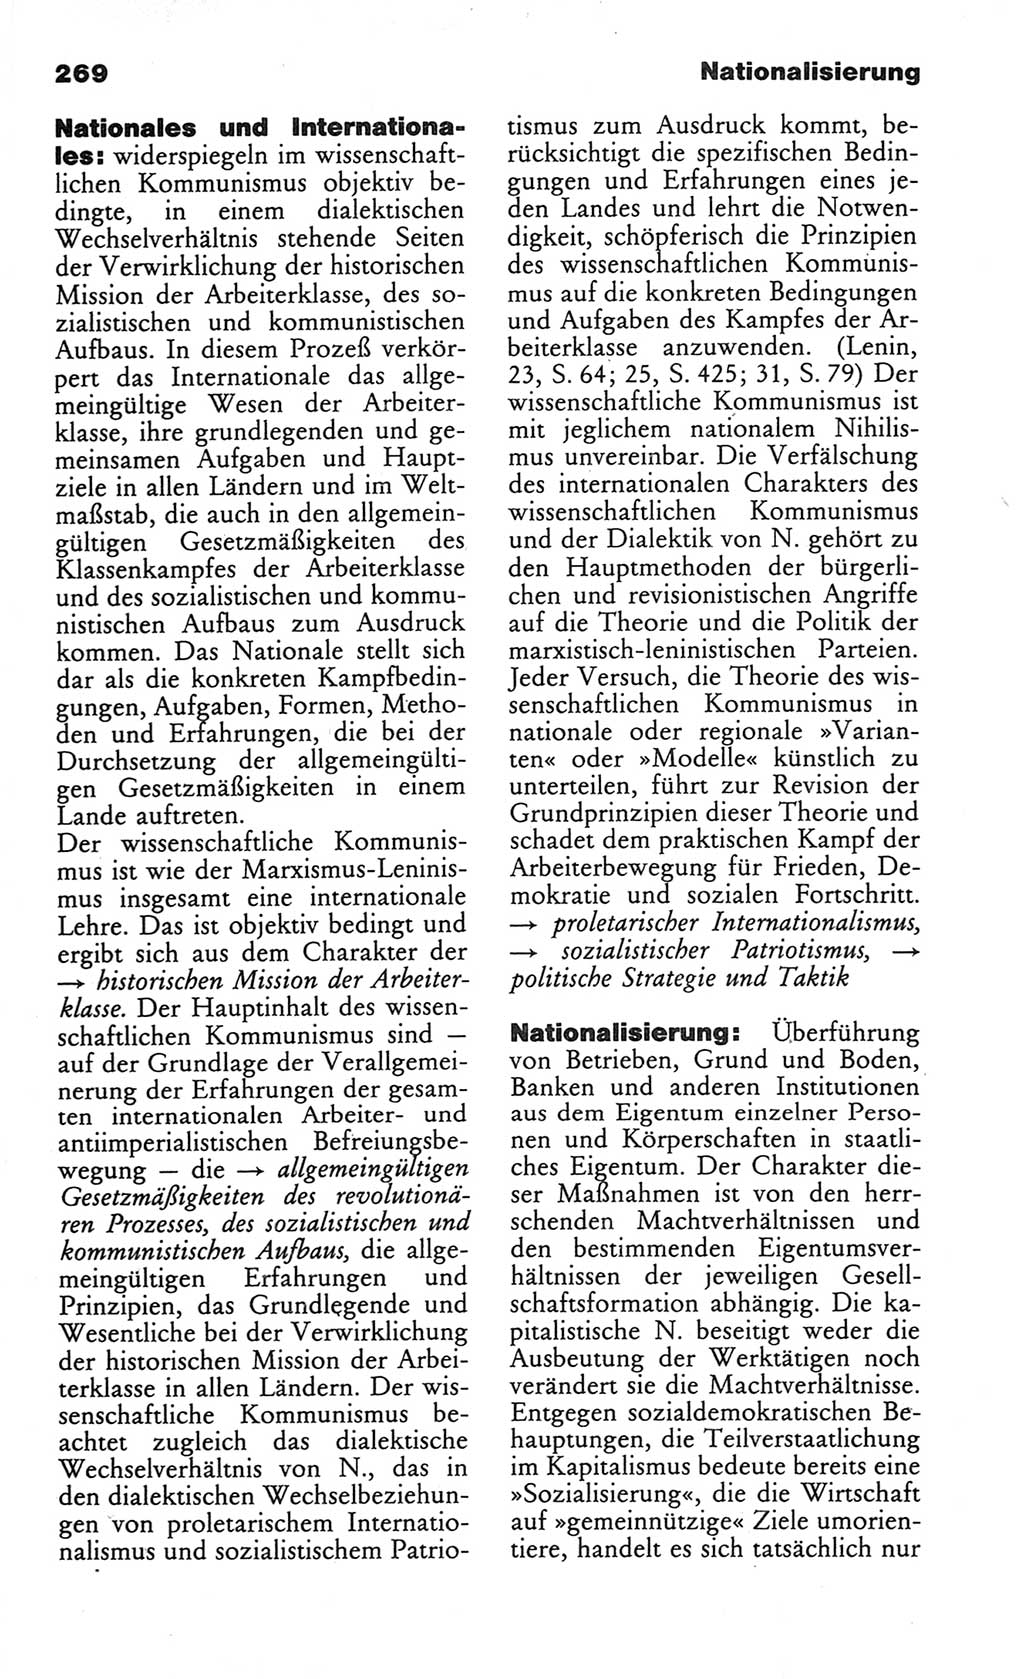 Wörterbuch des wissenschaftlichen Kommunismus [Deutsche Demokratische Republik (DDR)] 1984, Seite 269 (Wb. wiss. Komm. DDR 1984, S. 269)